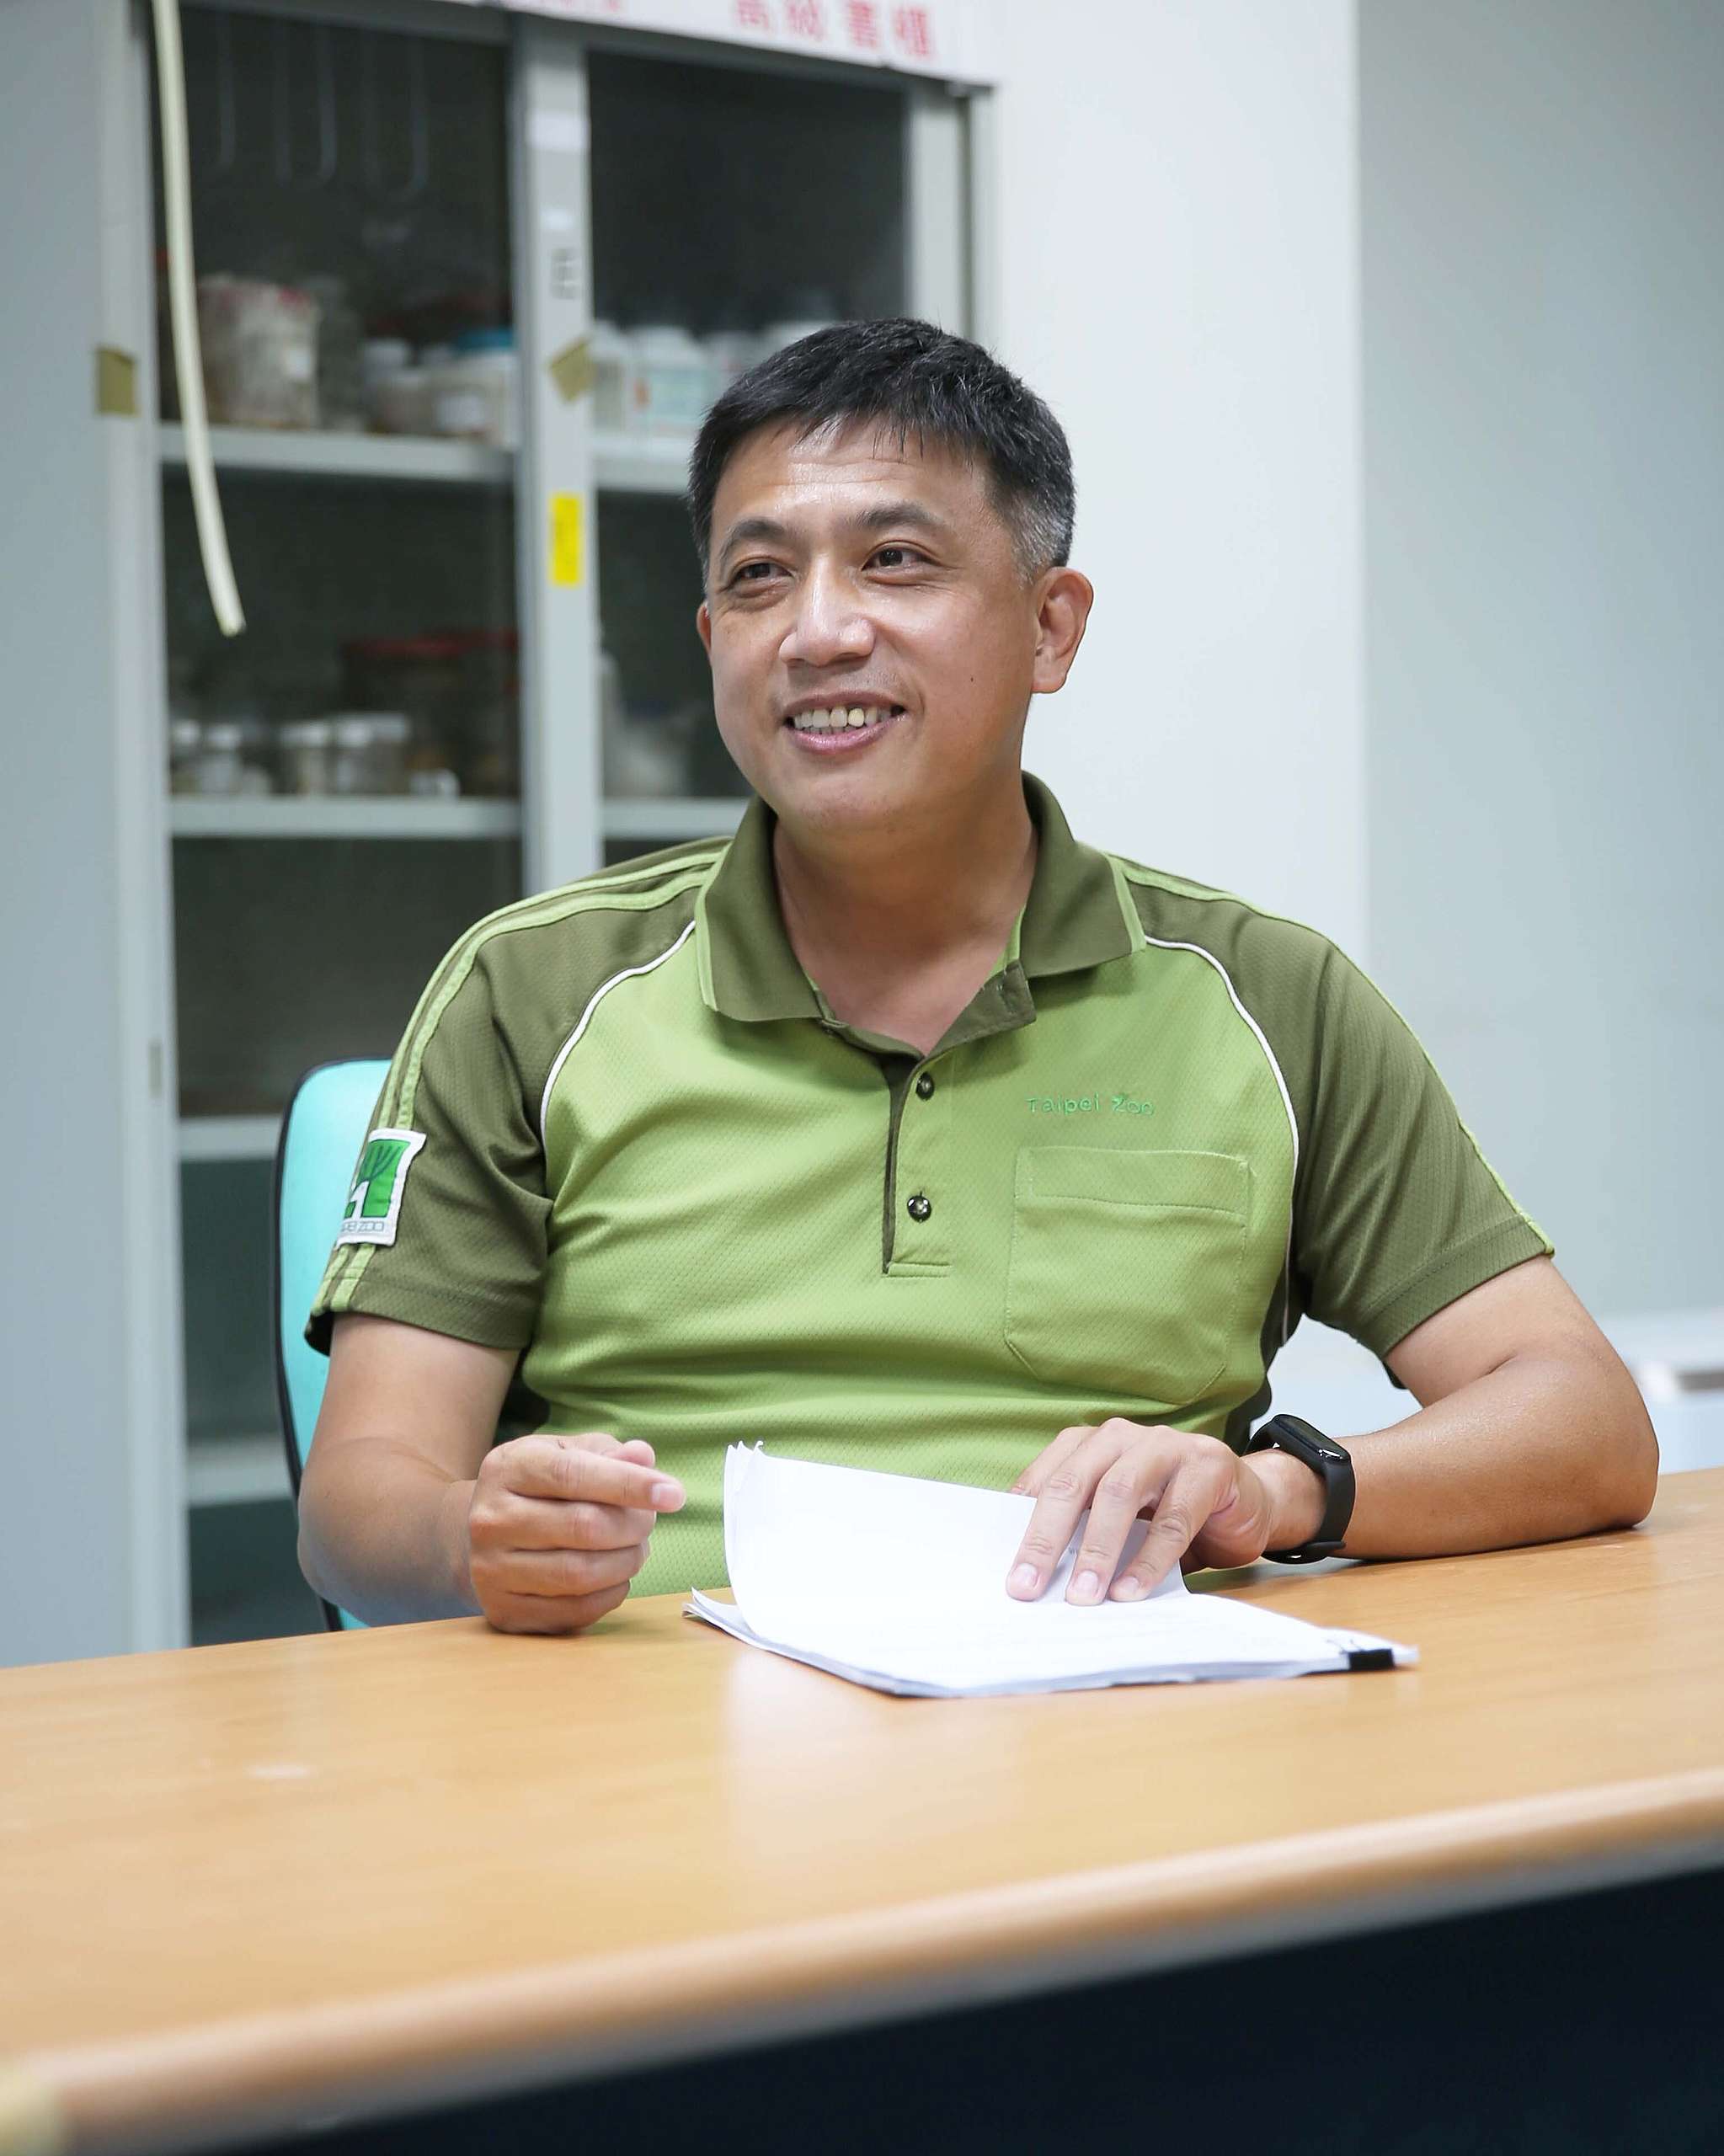 臺北市立動物園助理研究員張廖年鴻，他的實驗室平時就致力發展野生動物排遺內容物的分析鑑定技術，在此次綠色和平的研究派上用場。